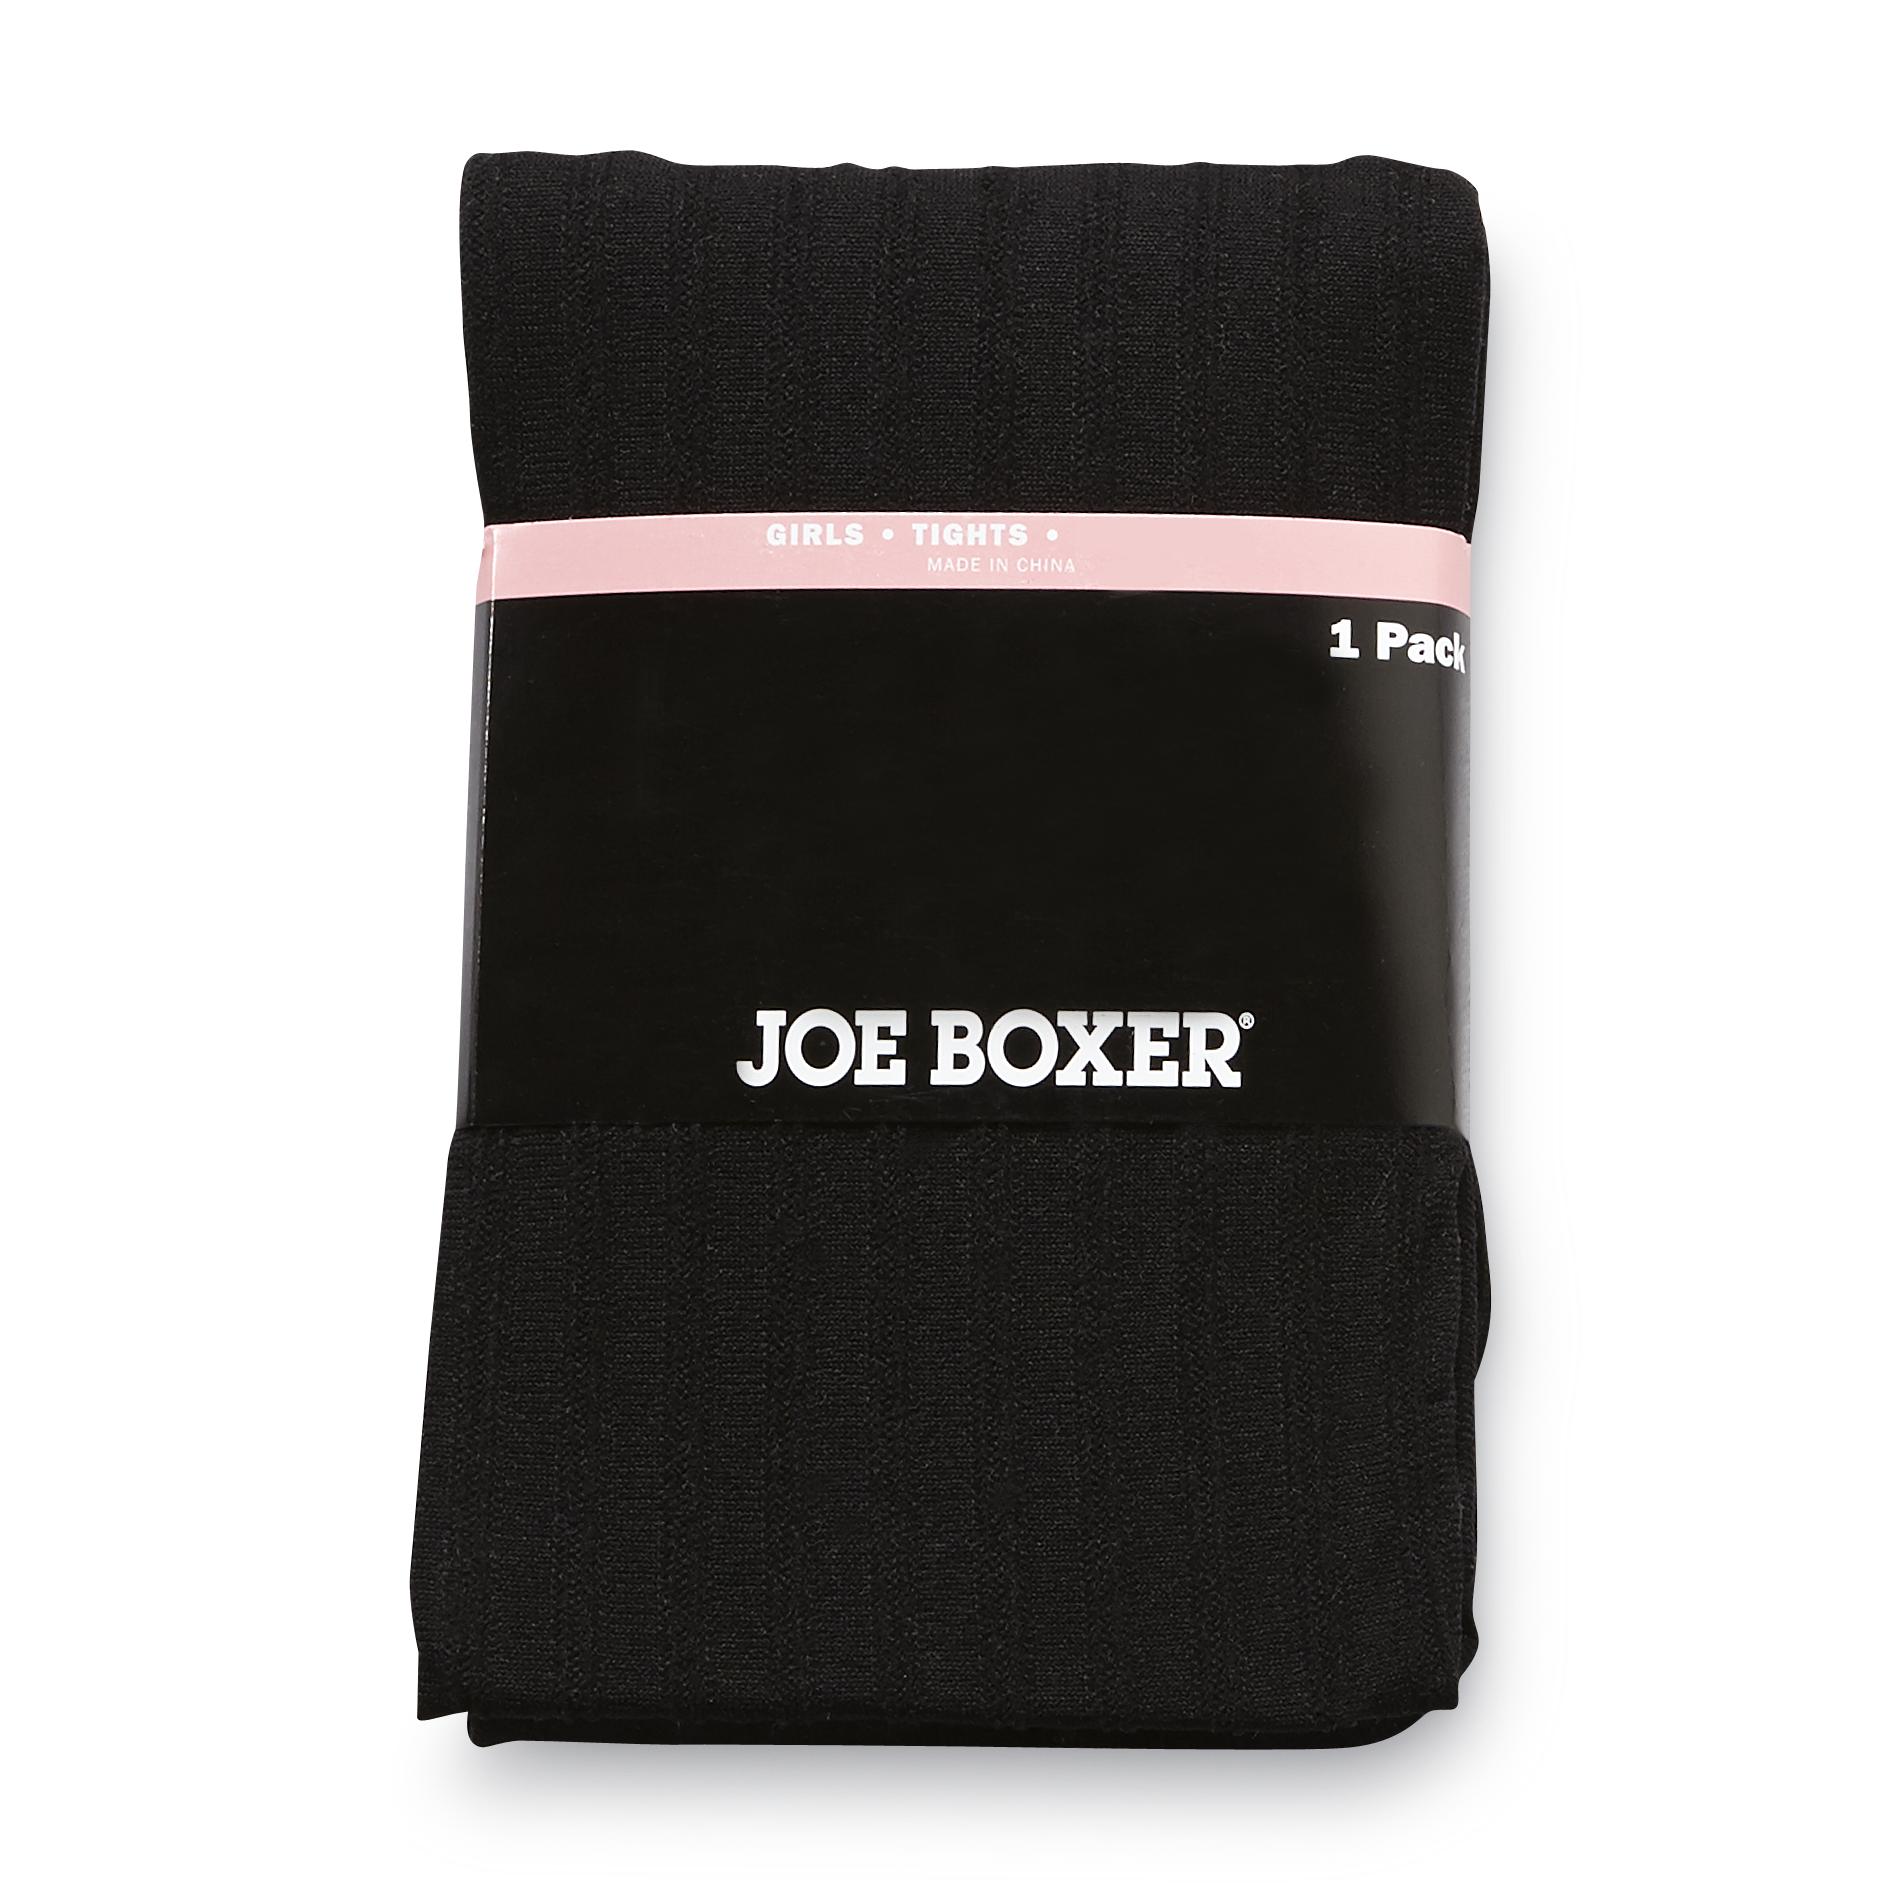 Joe Boxer Girl's Tights - Ribbed